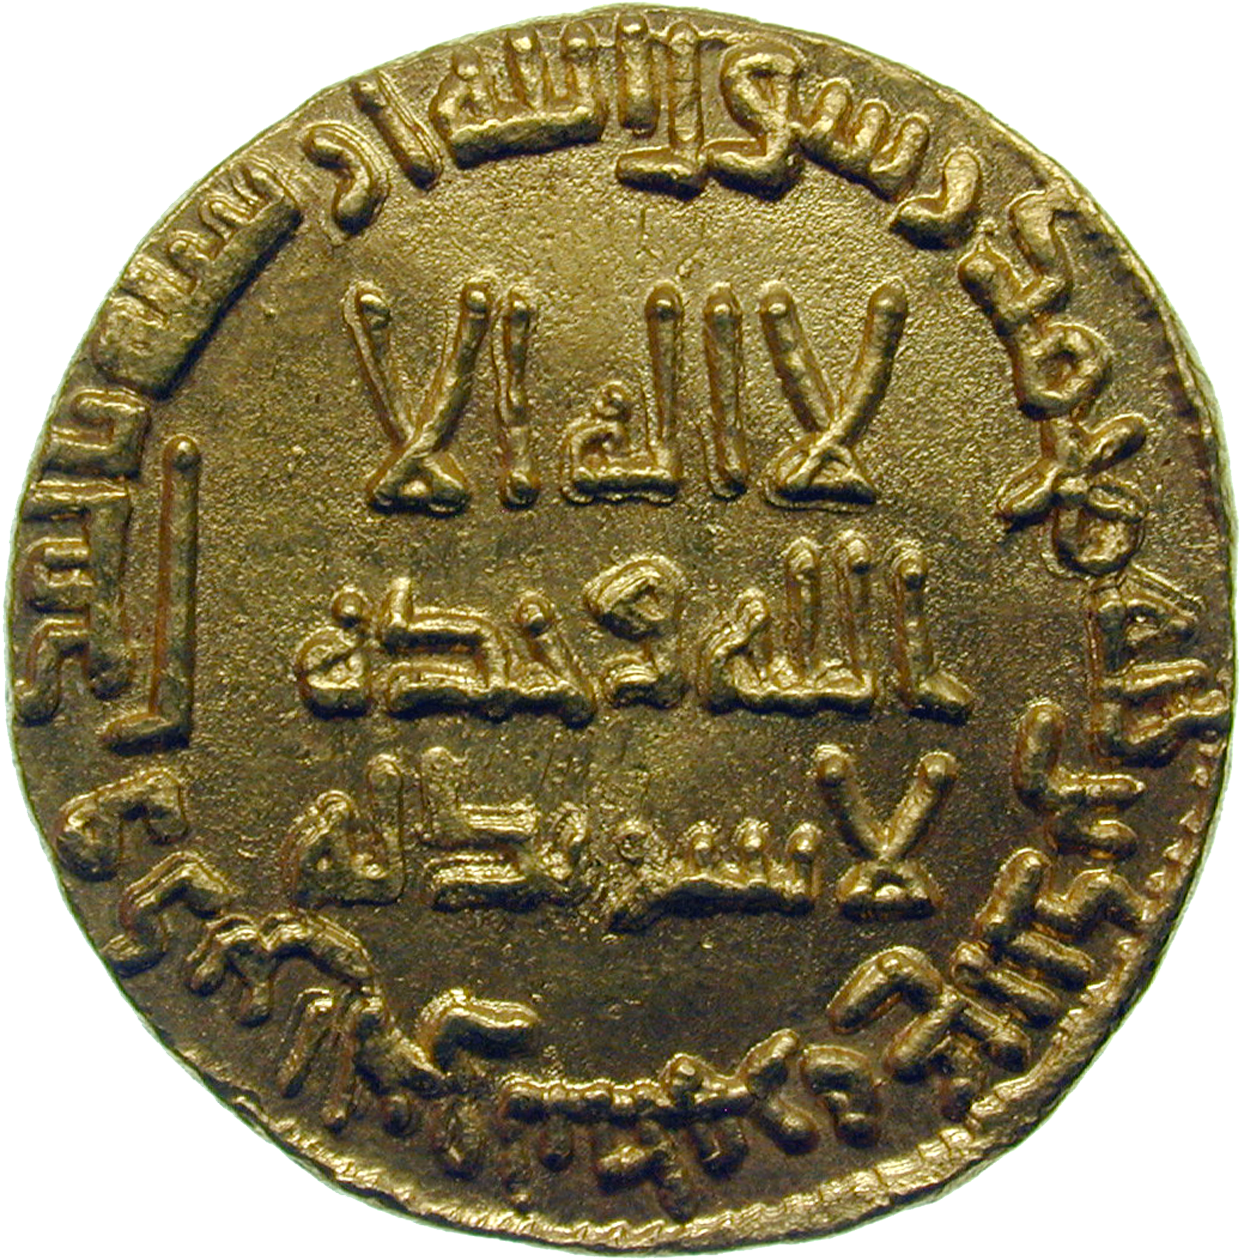 Umayyad Empire, Marwan II, Dinar, 131 AH (obverse)